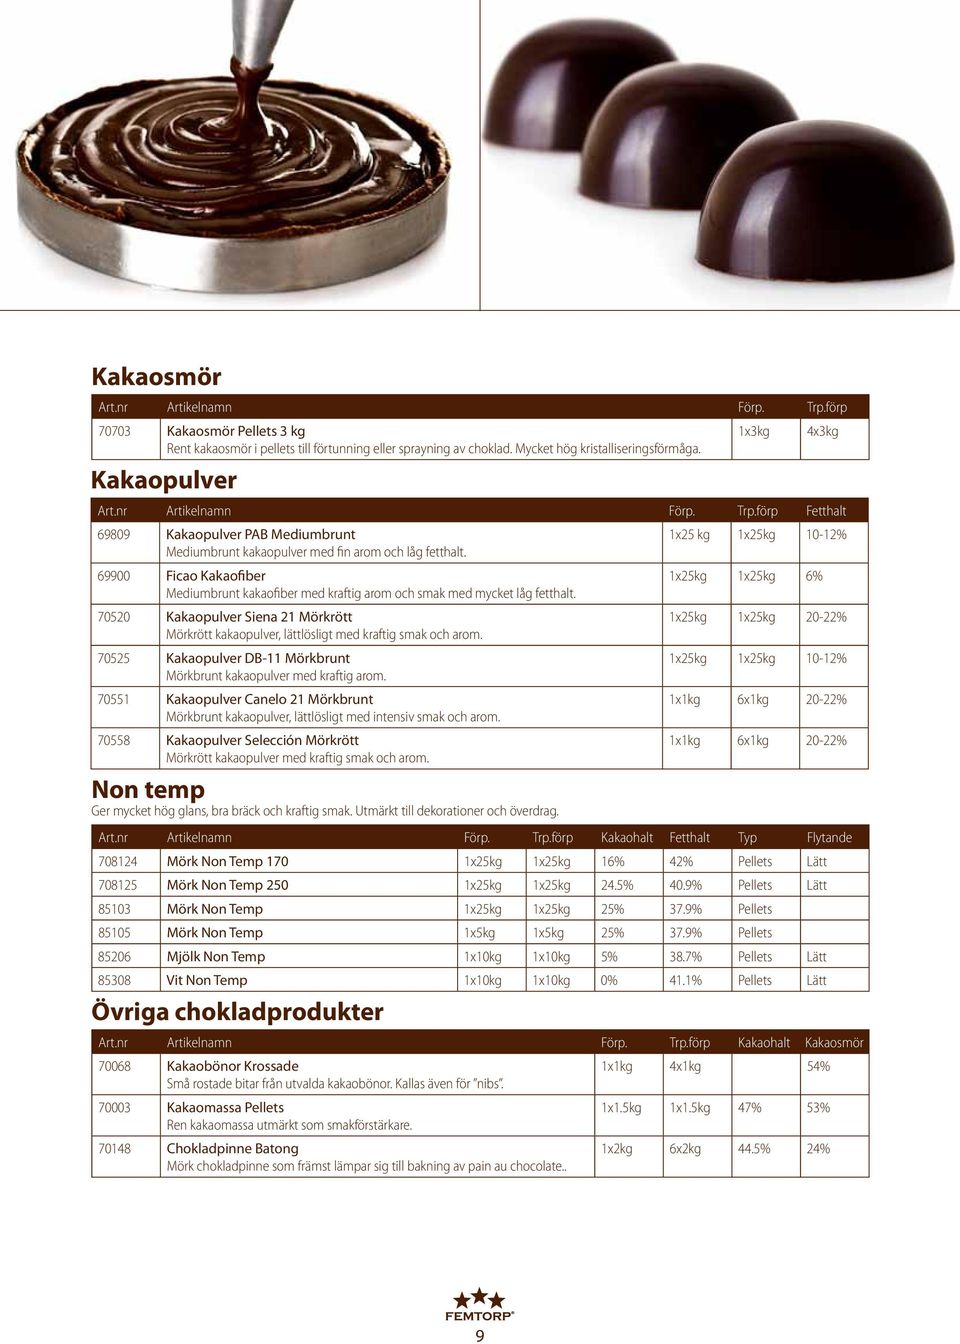 69900 Ficao Kakaofiber 1x25kg 1x25kg 6% Mediumbrunt kakaofiber med kraftig arom och smak med mycket låg fetthalt.